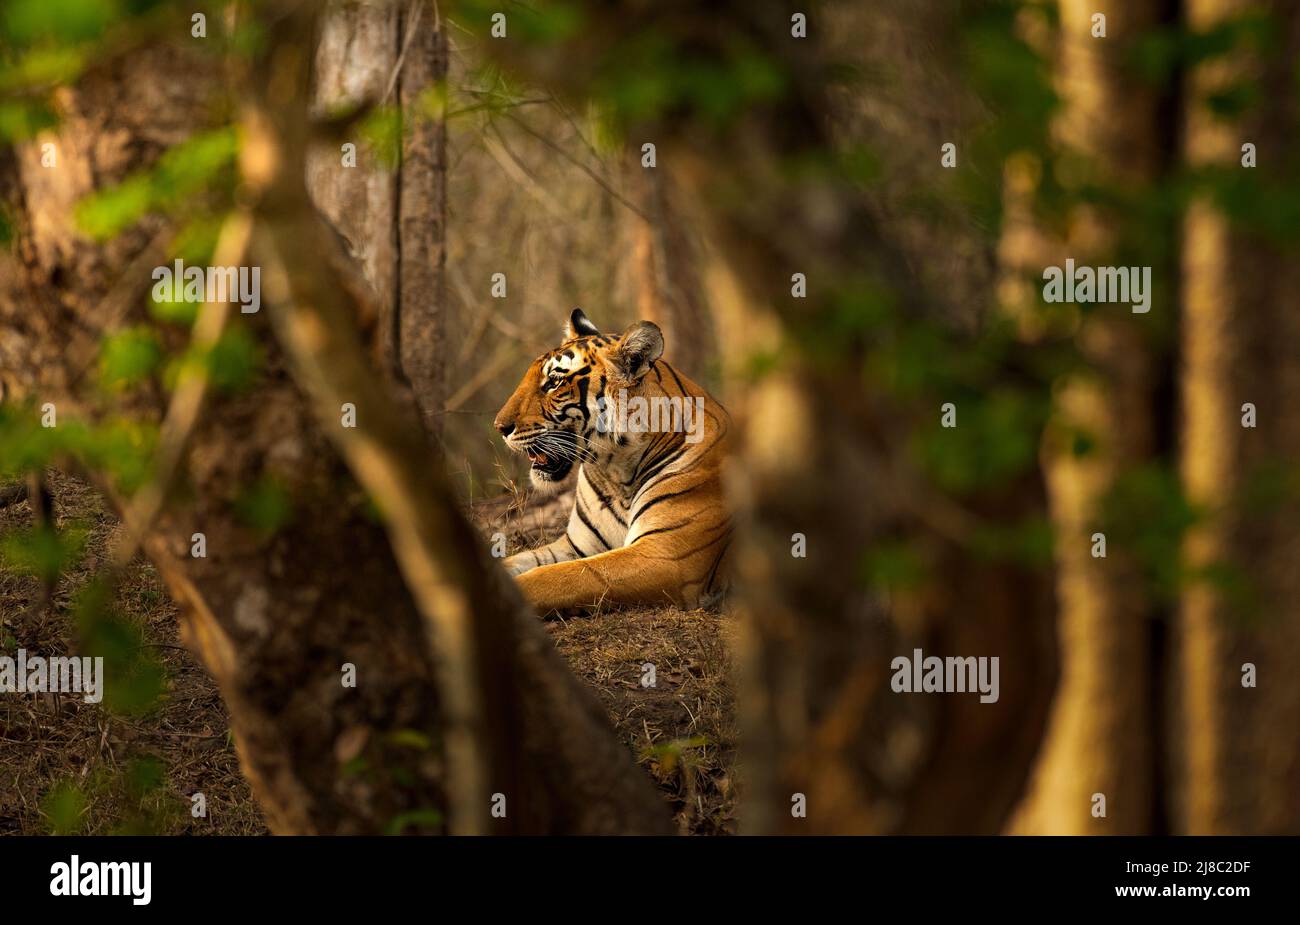 Tigre reposant sur son habitat, parc national de Kabini, Karnataka Banque D'Images